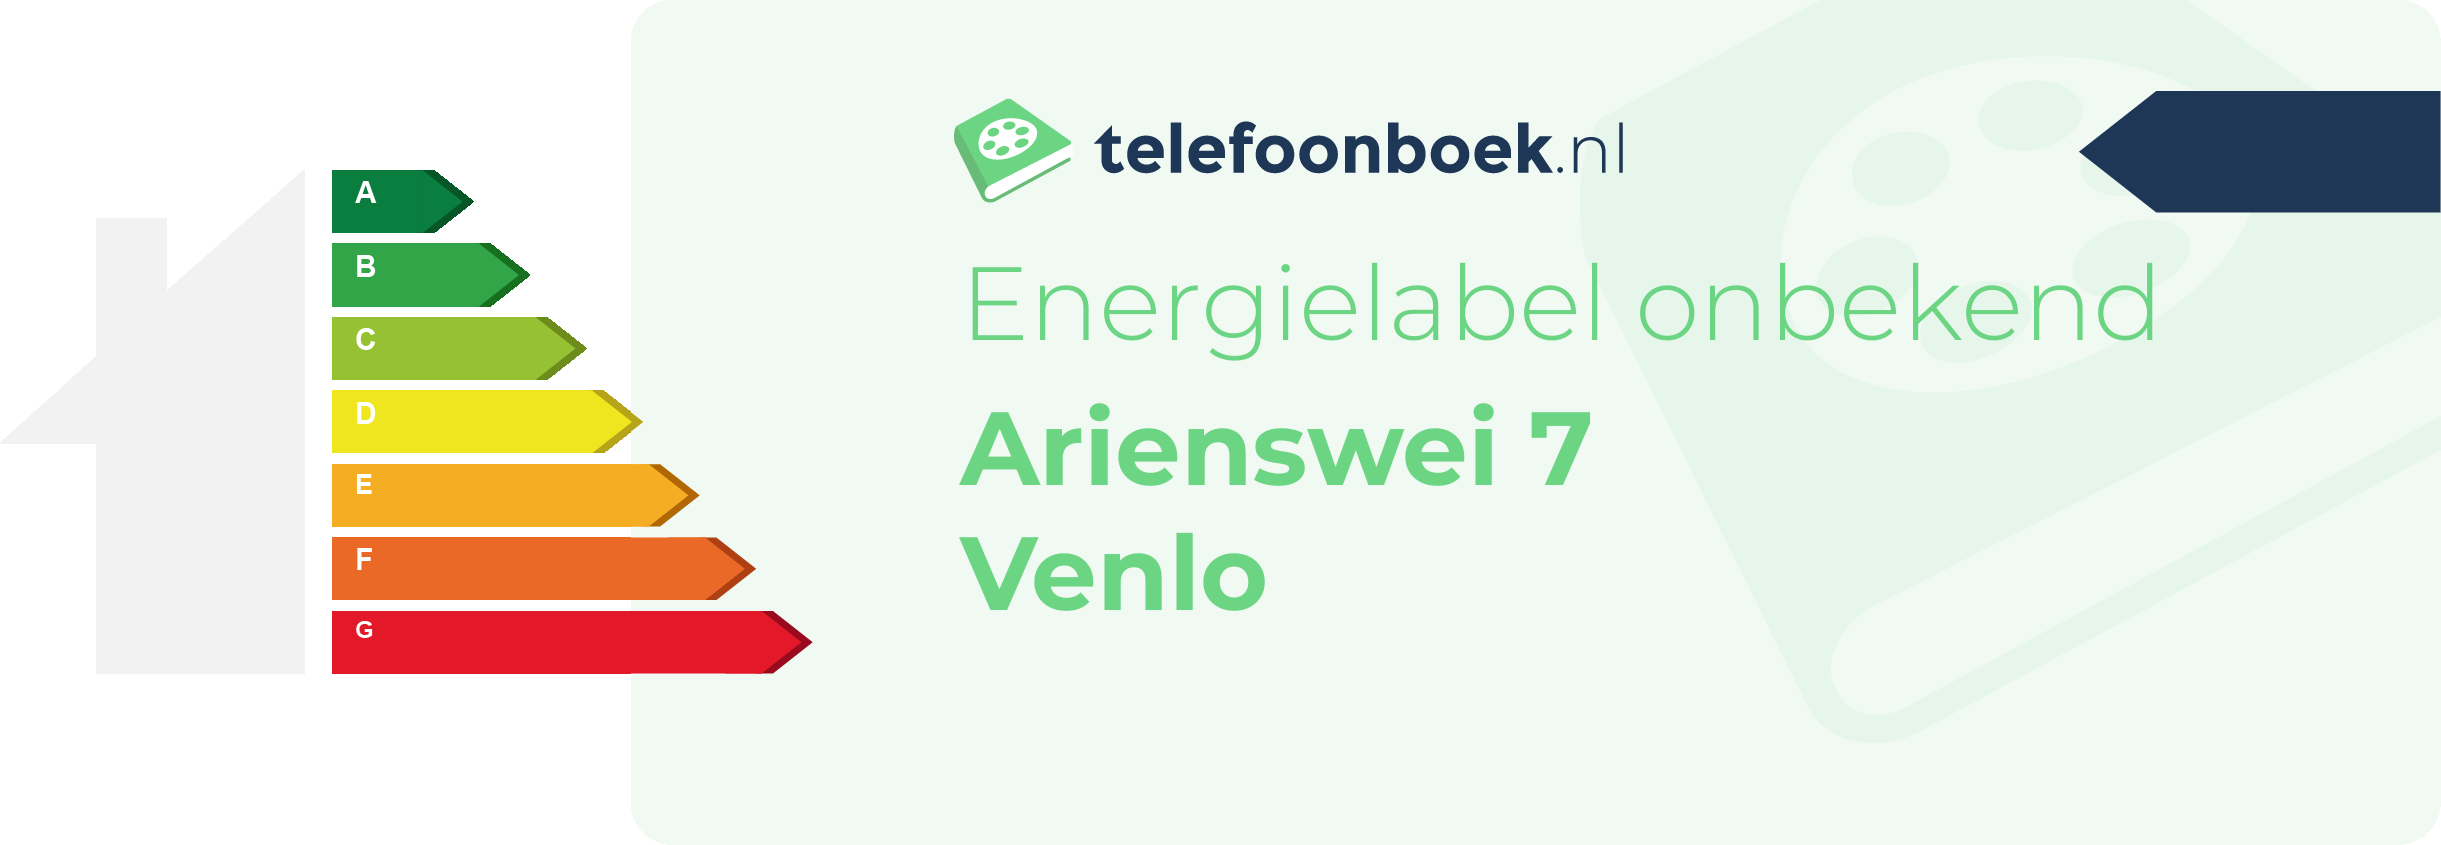 Energielabel Arienswei 7 Venlo